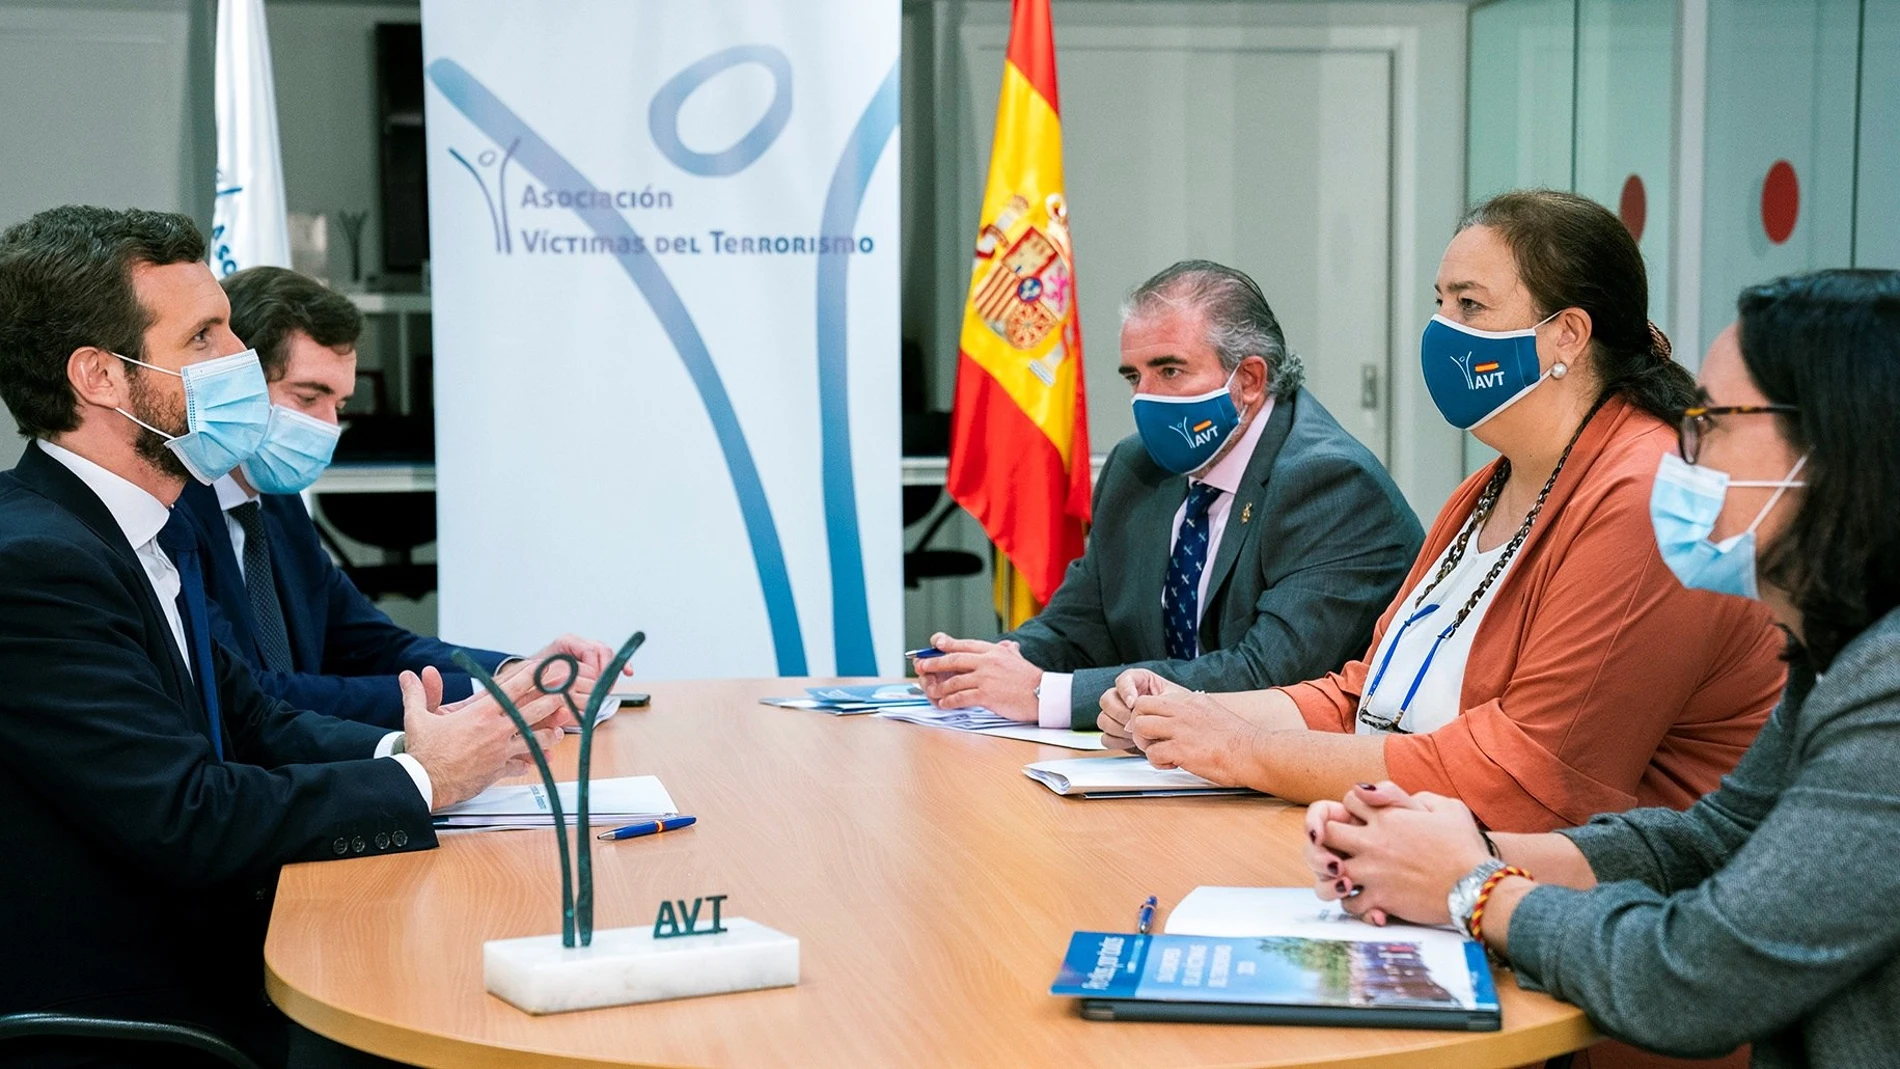 GRAF9876. MADRID, 24/09/2020.- El presidente del PP, Pablo Casado (i), durante la reunión que ha mantenido con la presidenta de la Asociación de Víctimas del Terrorismo (AVT), Maite Araluce (2d), y otros miembros hoy en Madrid. EFE/ David Mudarra/PP/SOLO USO EDITORIAL/NO VENTAS